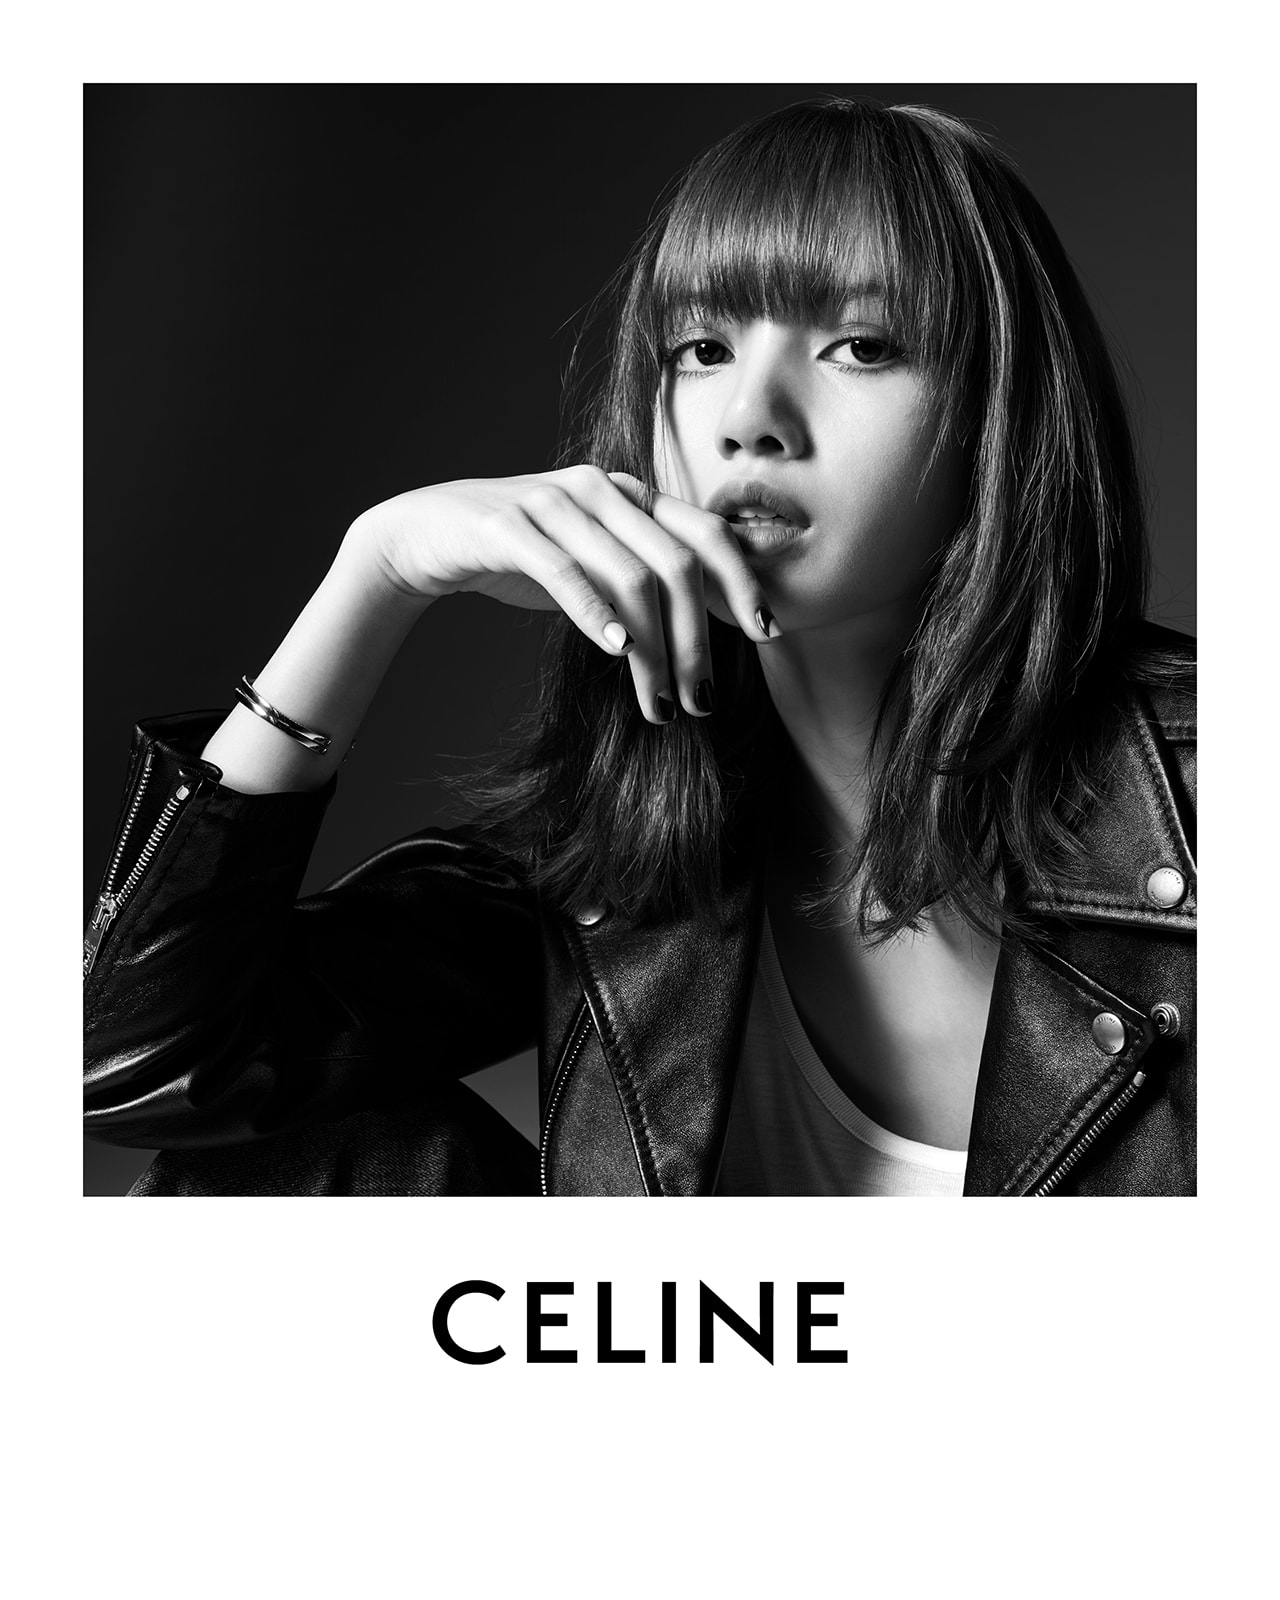 UPDATE: BTS Member V Confirmed as CELINE's Brand Ambassador